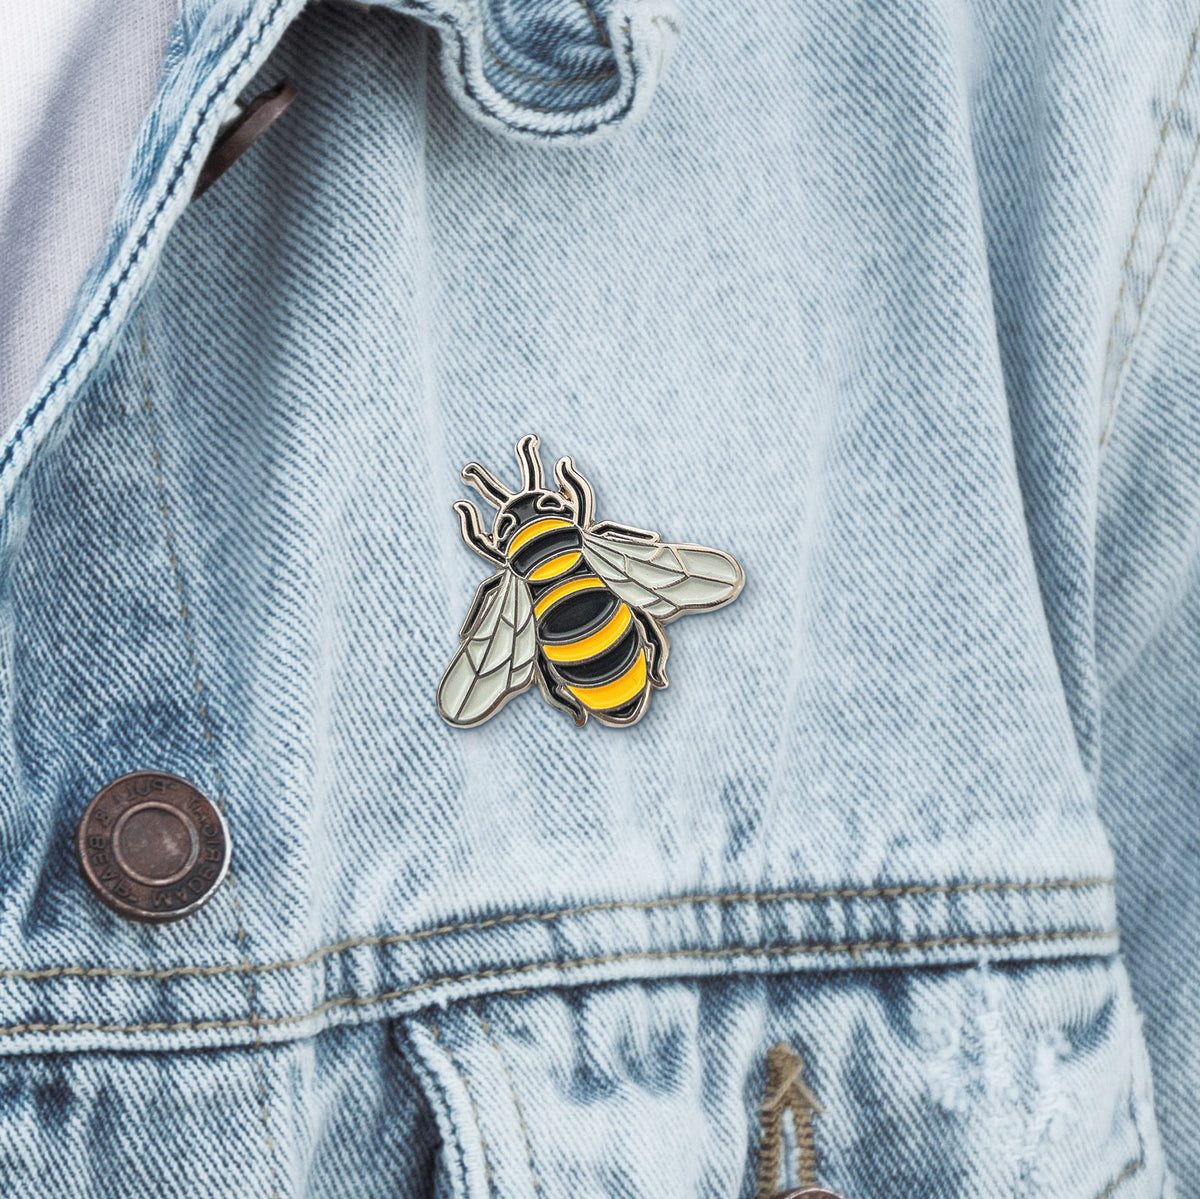 Honeybee enamel pin on a denim jacket